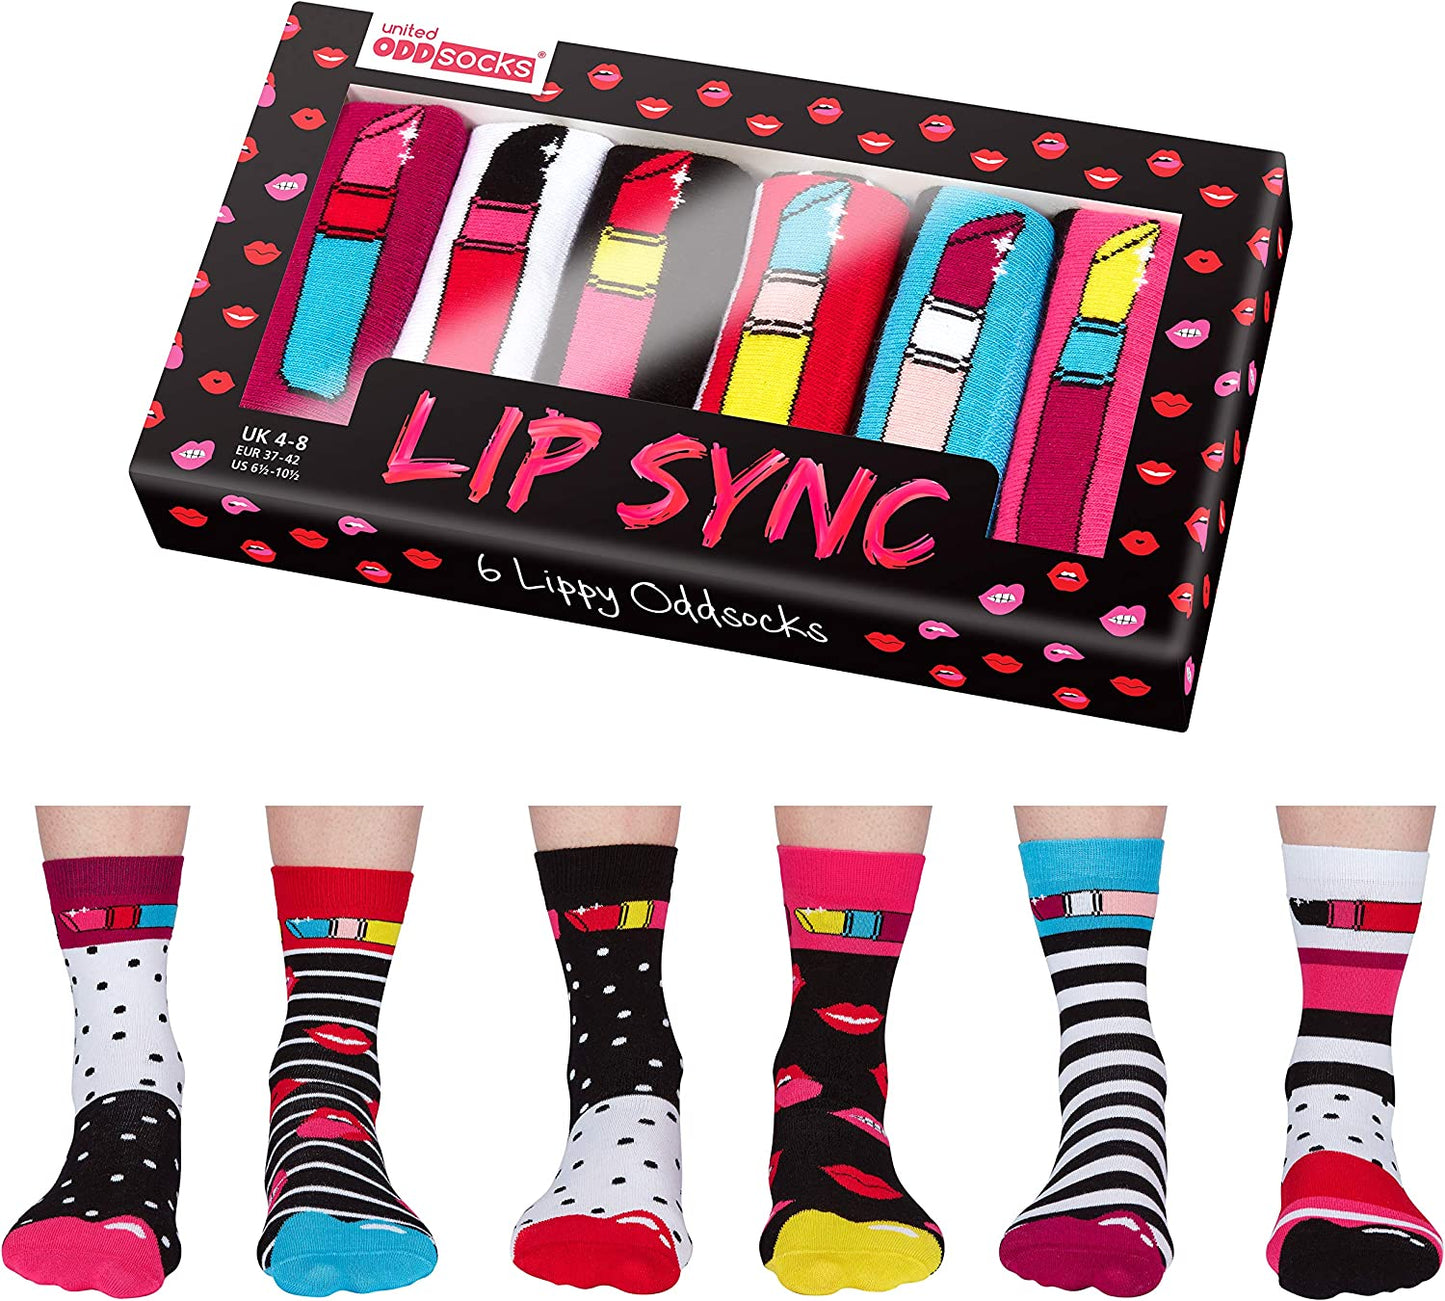 Chaussettes dépareillées - United Oddsocks Box Lip Sync chaussettes United Oddsocks